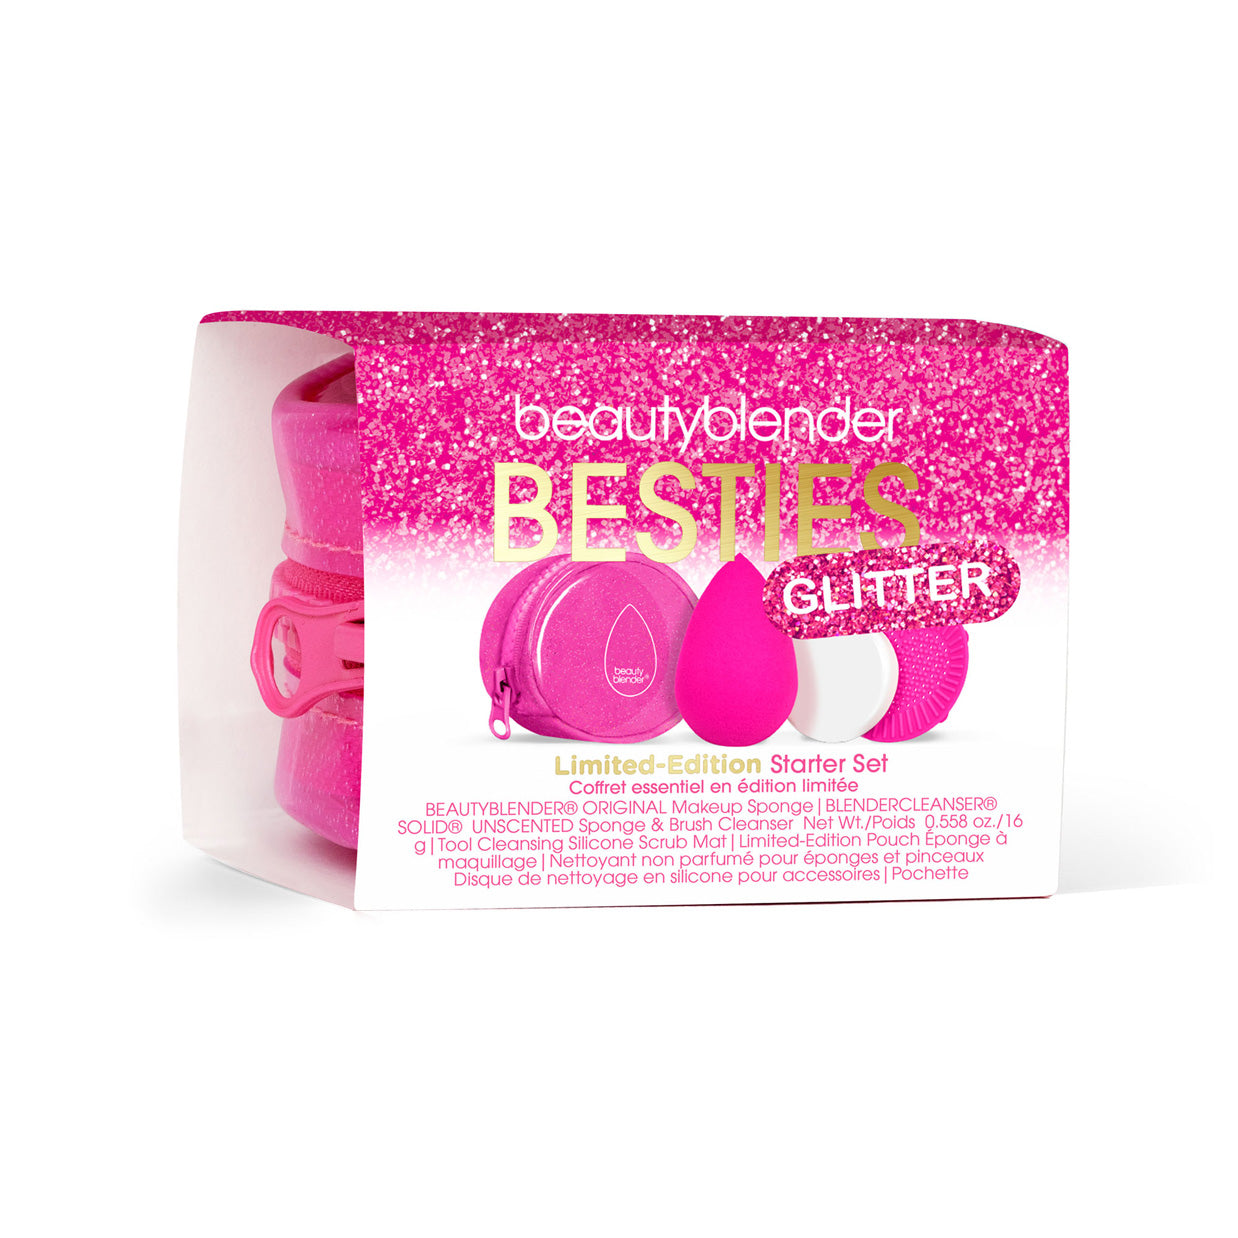 Besties Glitter Blend & Cleanse 4-Piece Starter Set